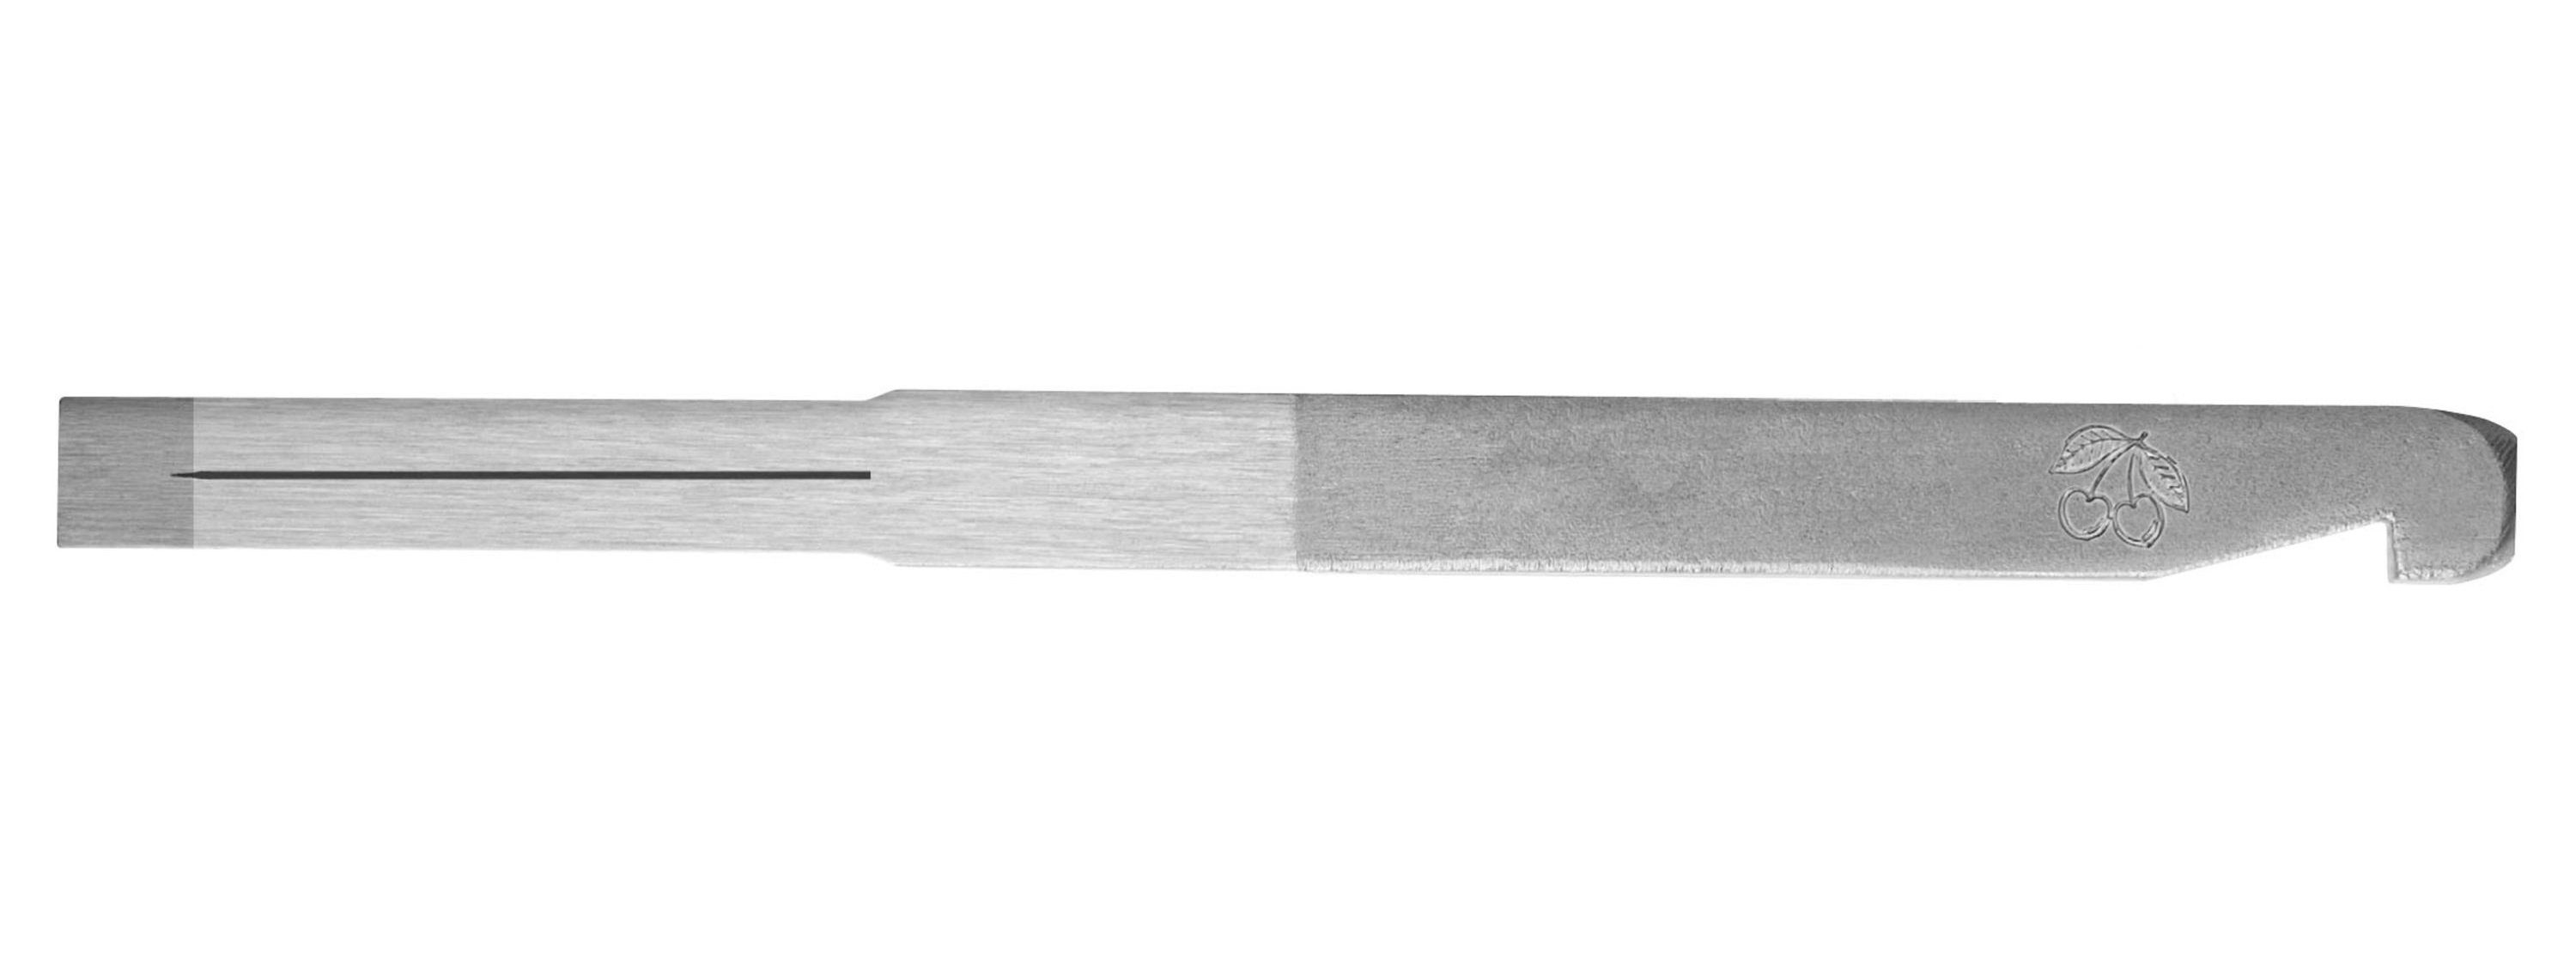 KIRSCHEN Hobelmesser - 3mm Kirschen mit Haken Nuthobeleisen